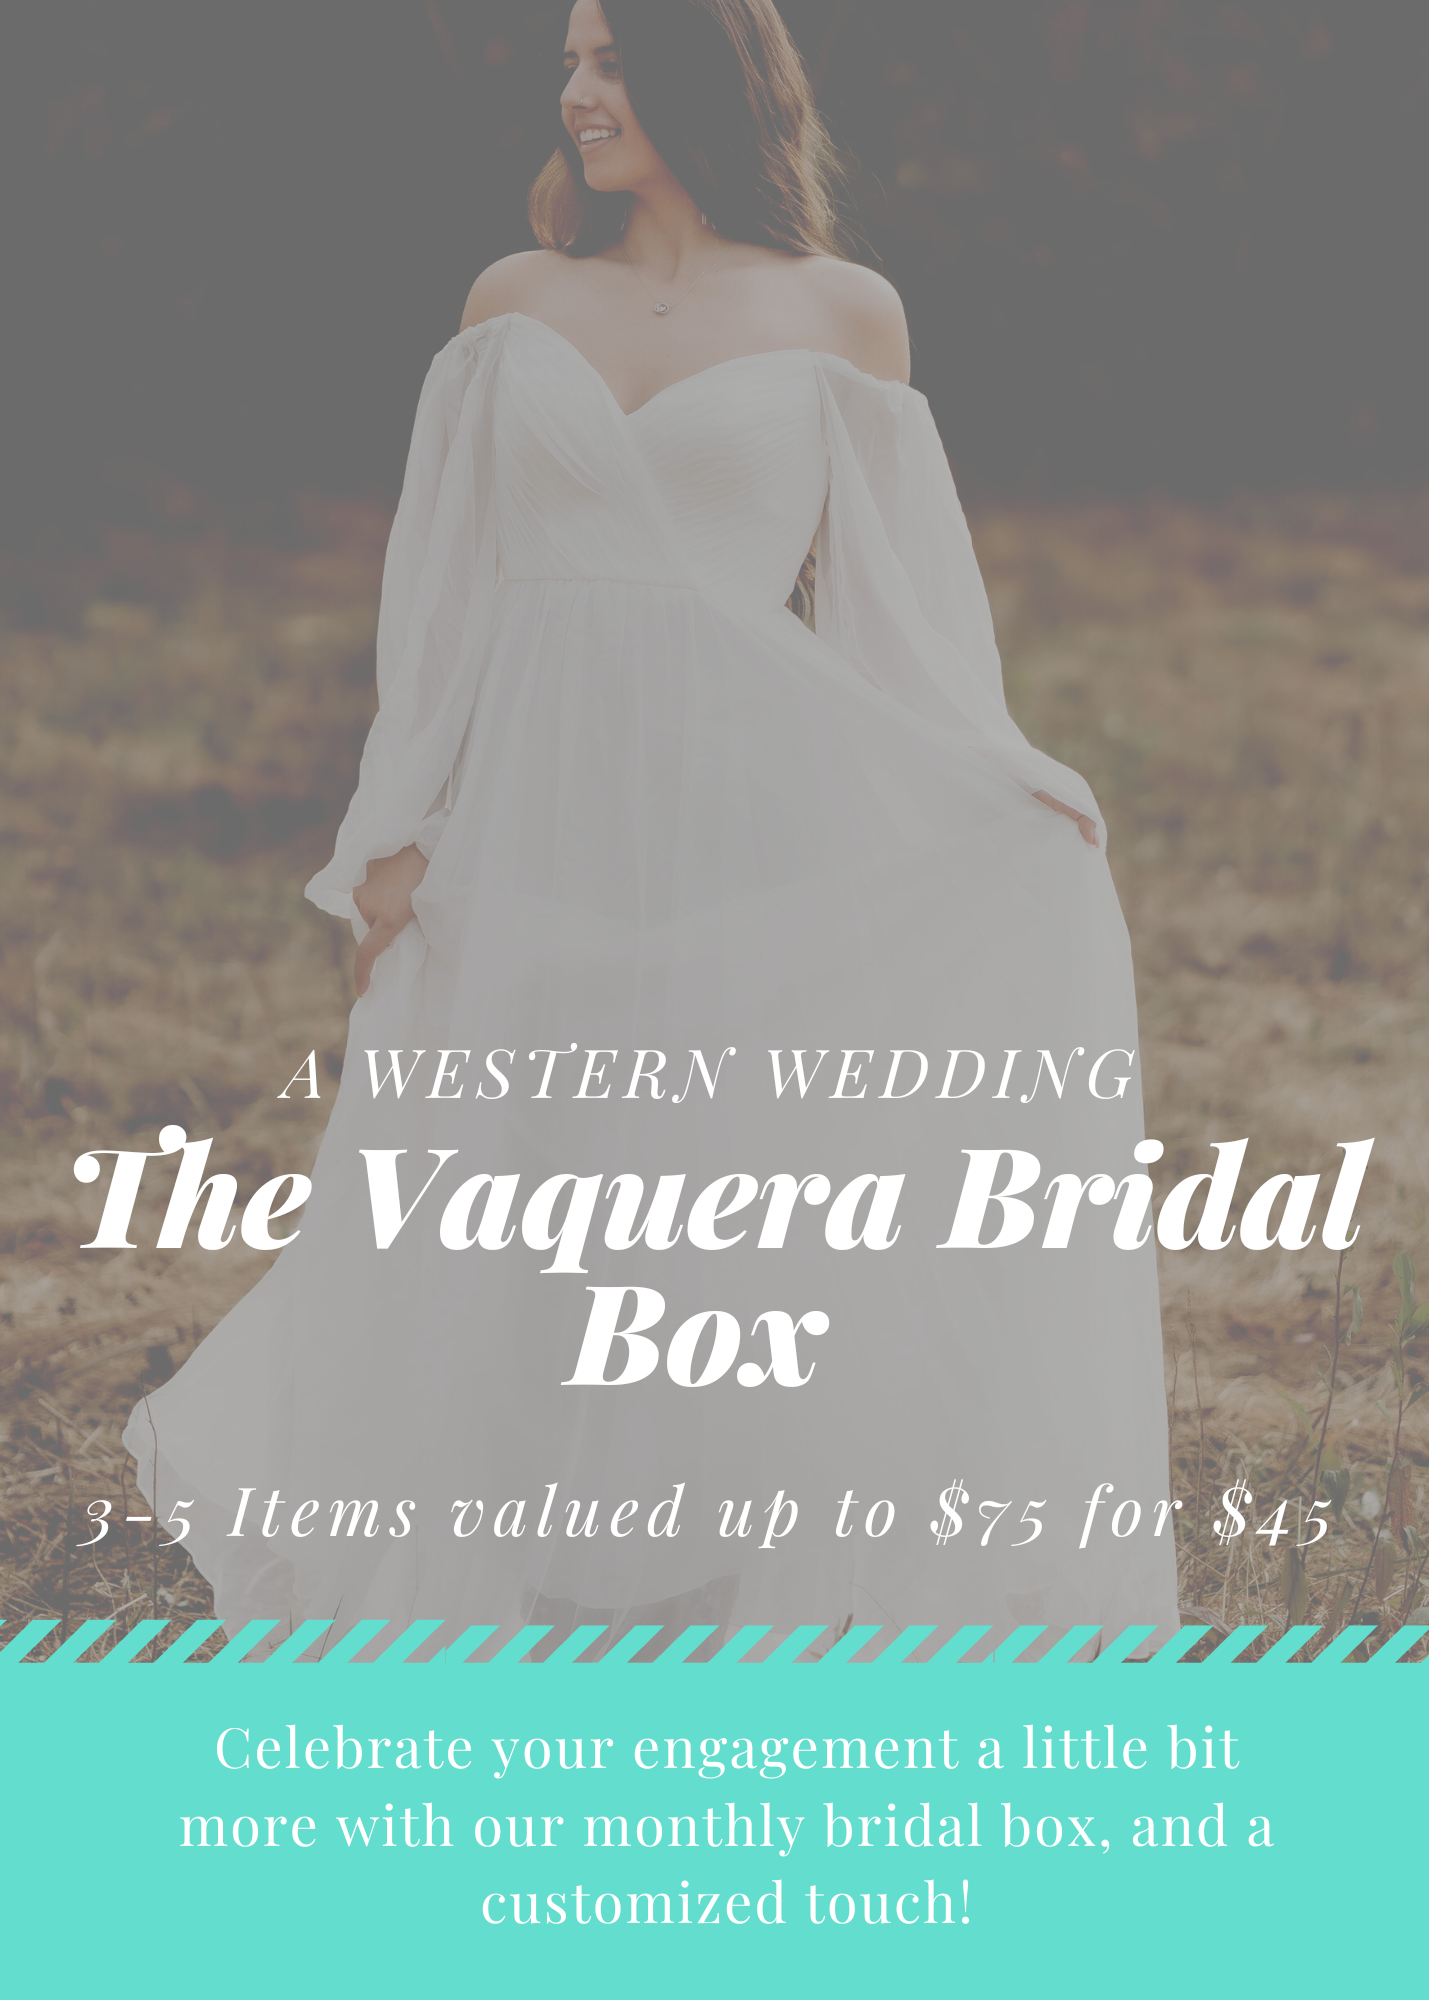 The Vaquera Bridal Box